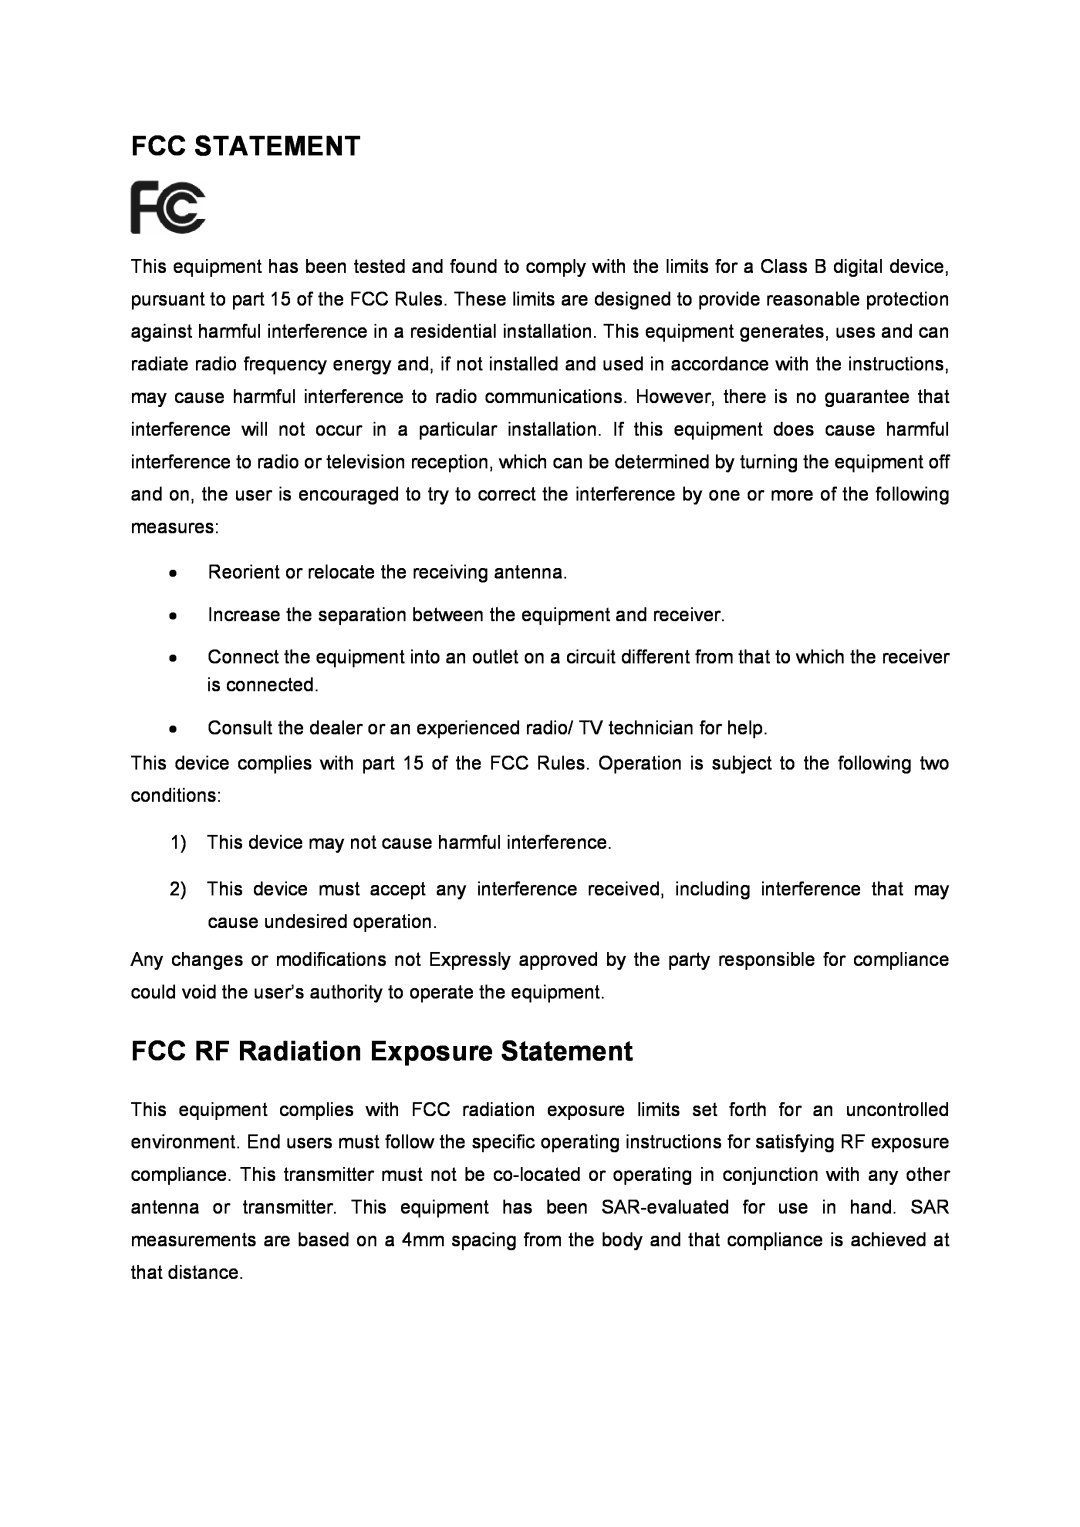 TP-Link TL-WDN4800 manual Fcc Statement, FCC RF Radiation Exposure Statement 